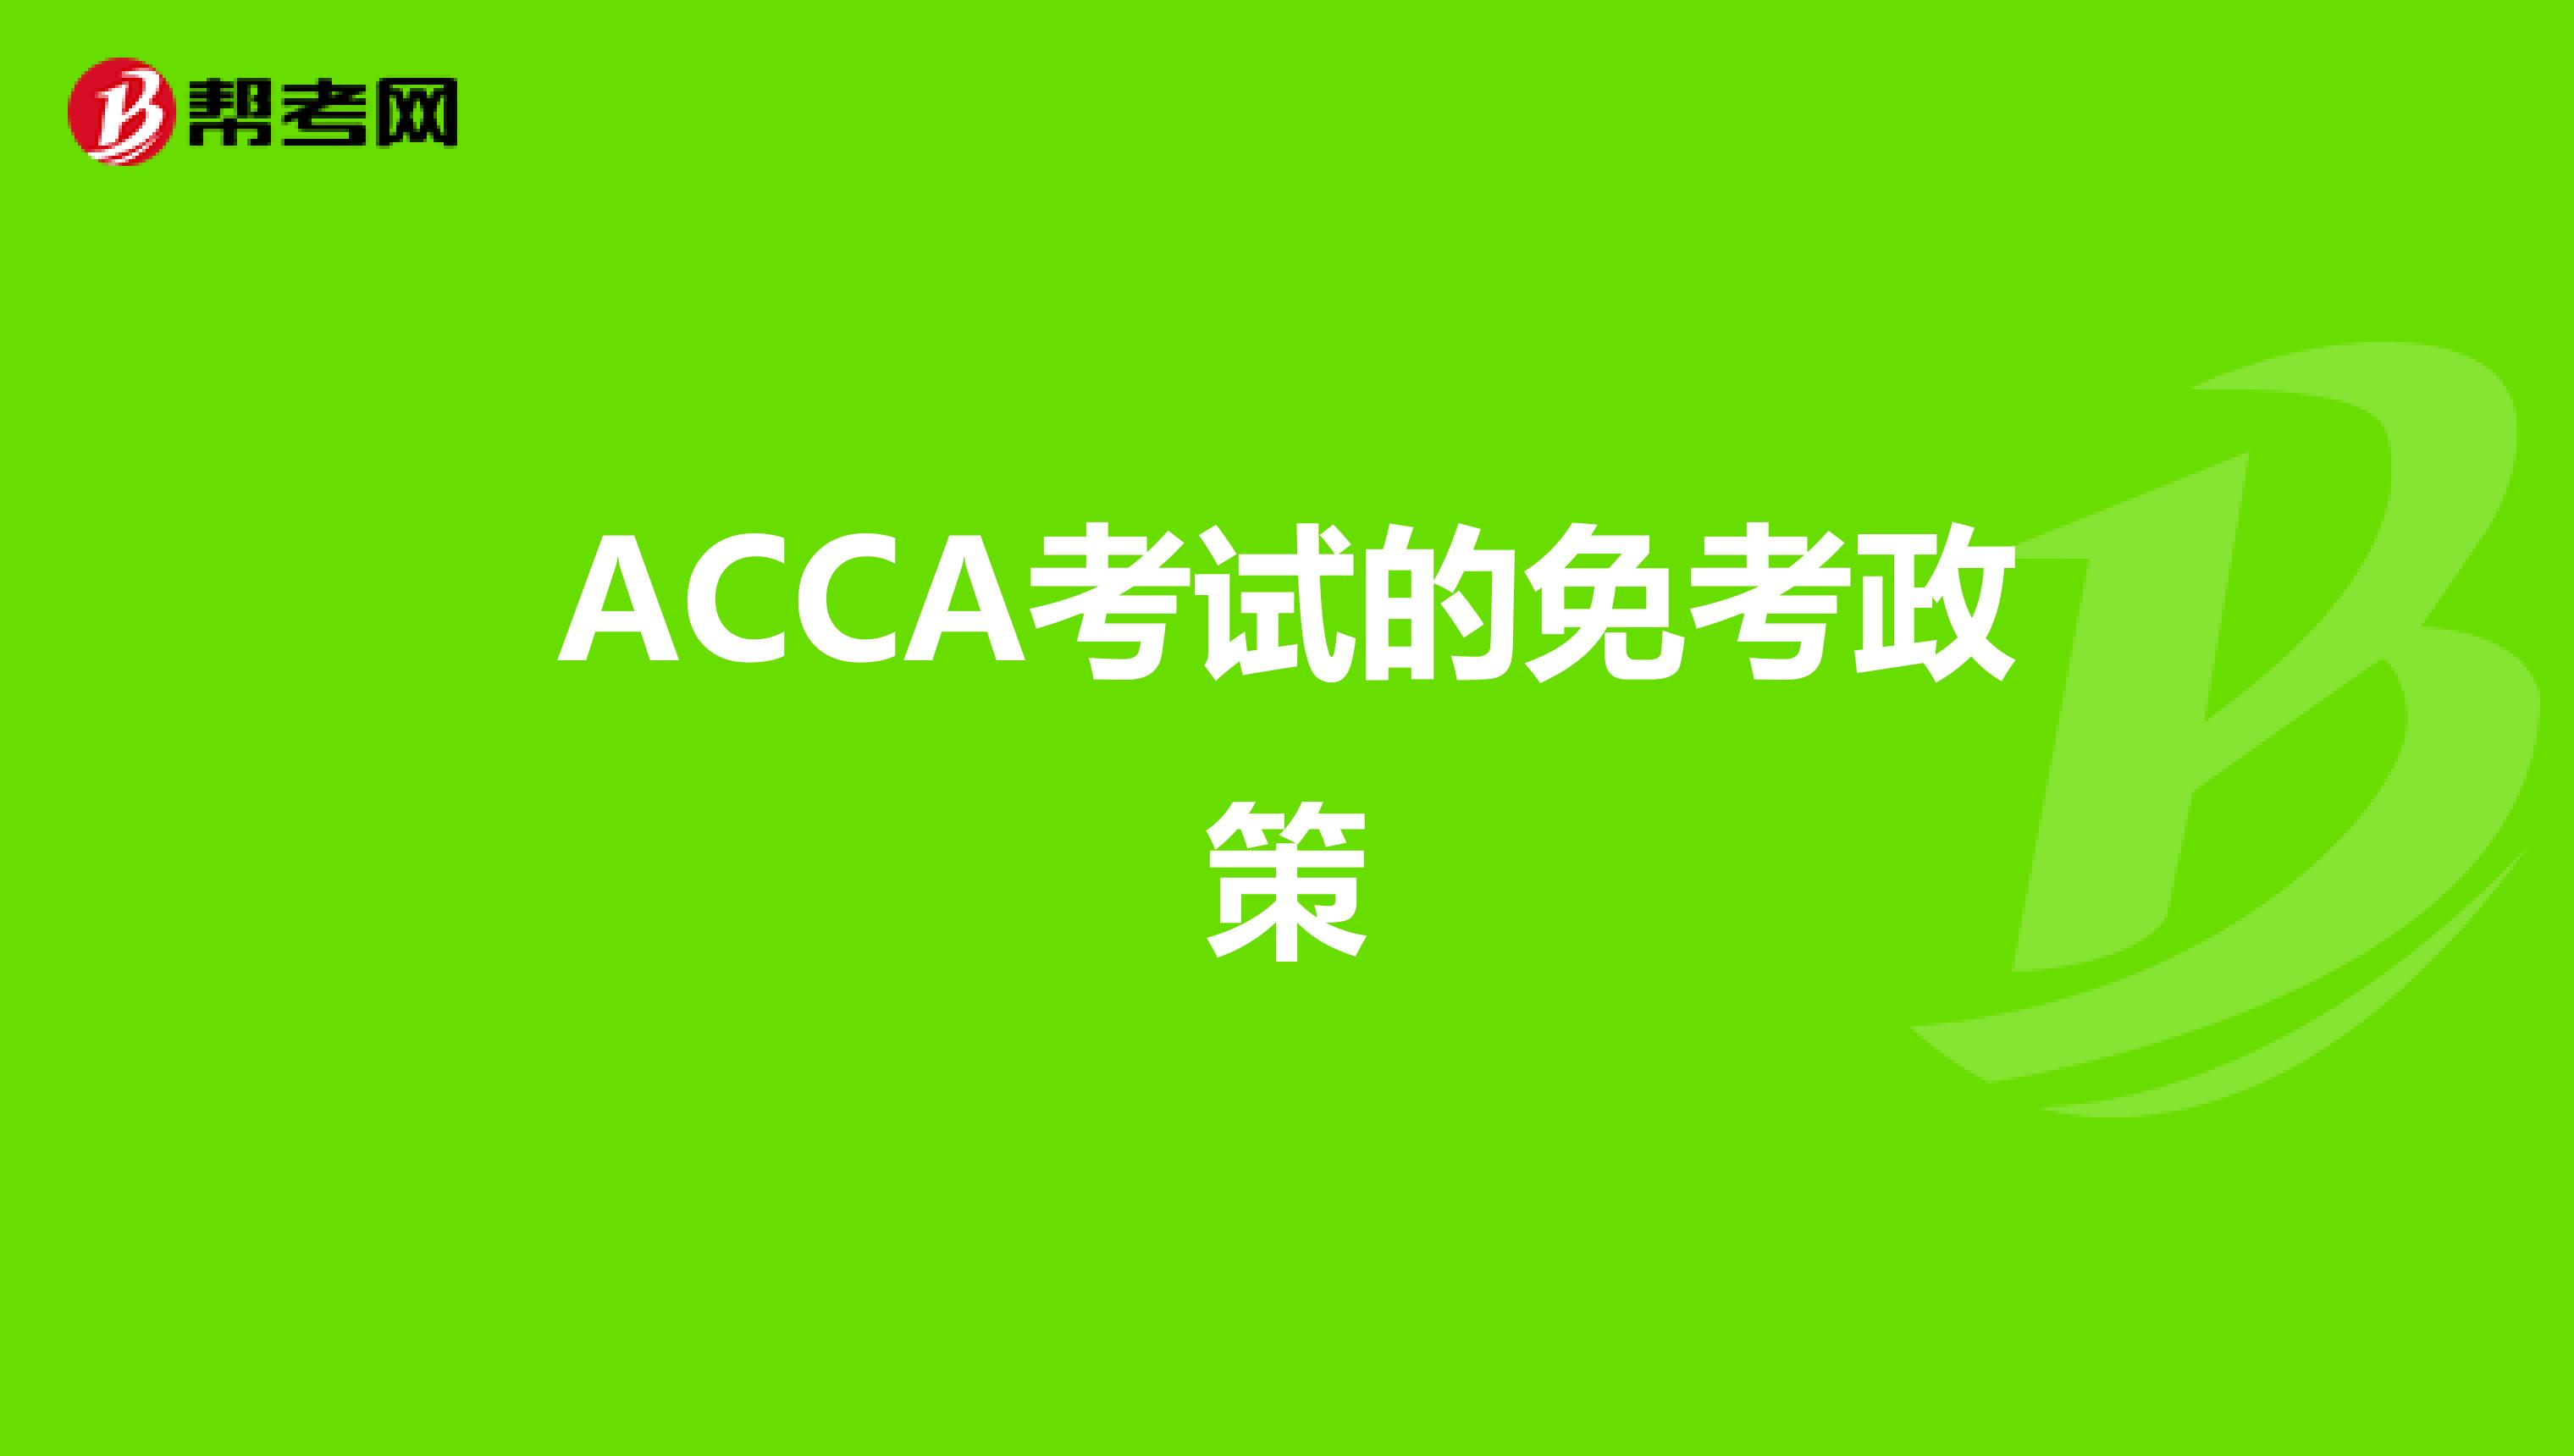 ACCA考试的免考政策